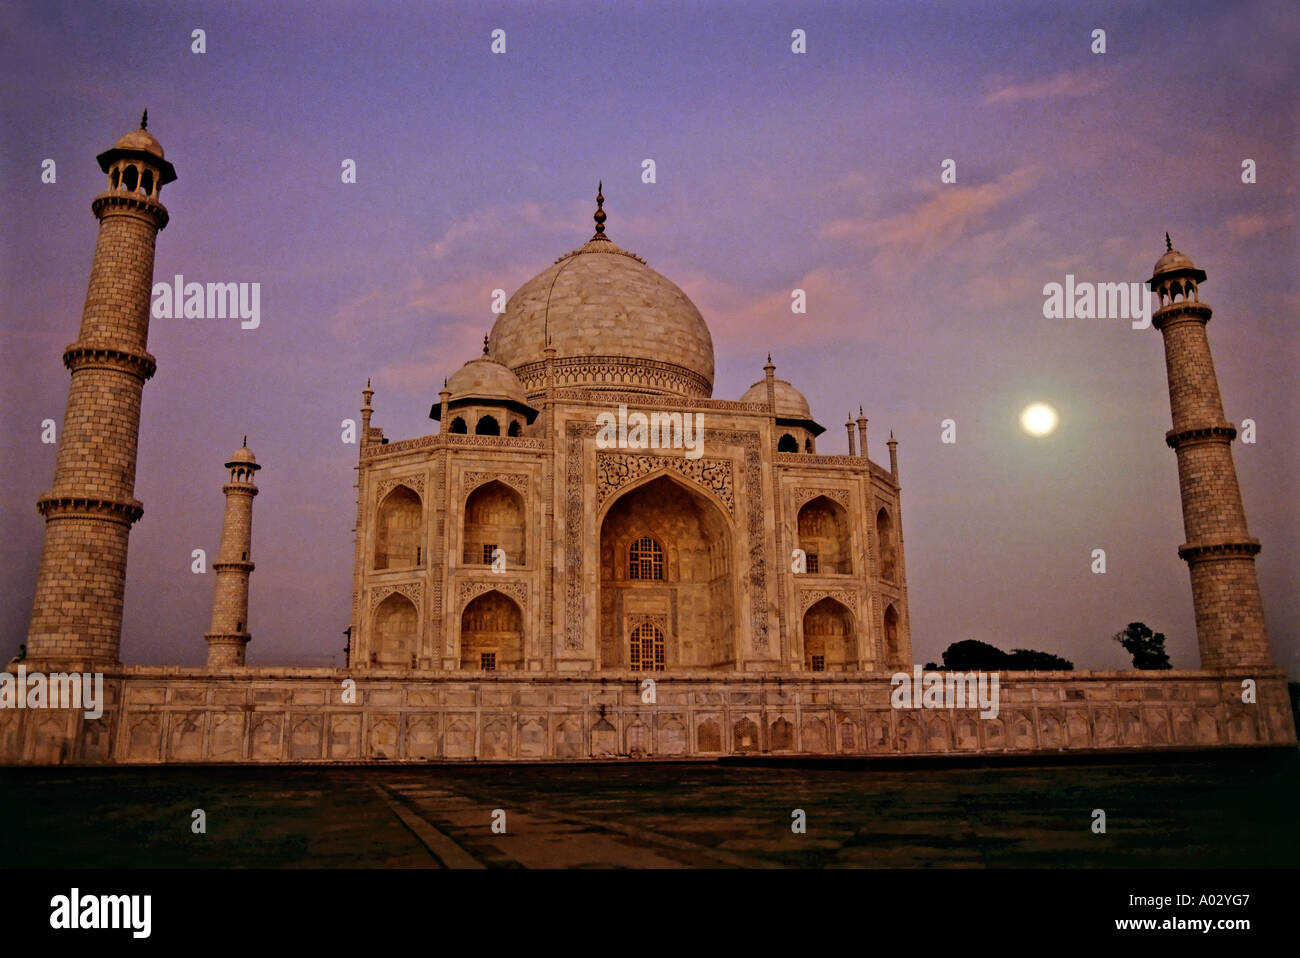 Taj Mahal at night, Agra, India. Stock Photo